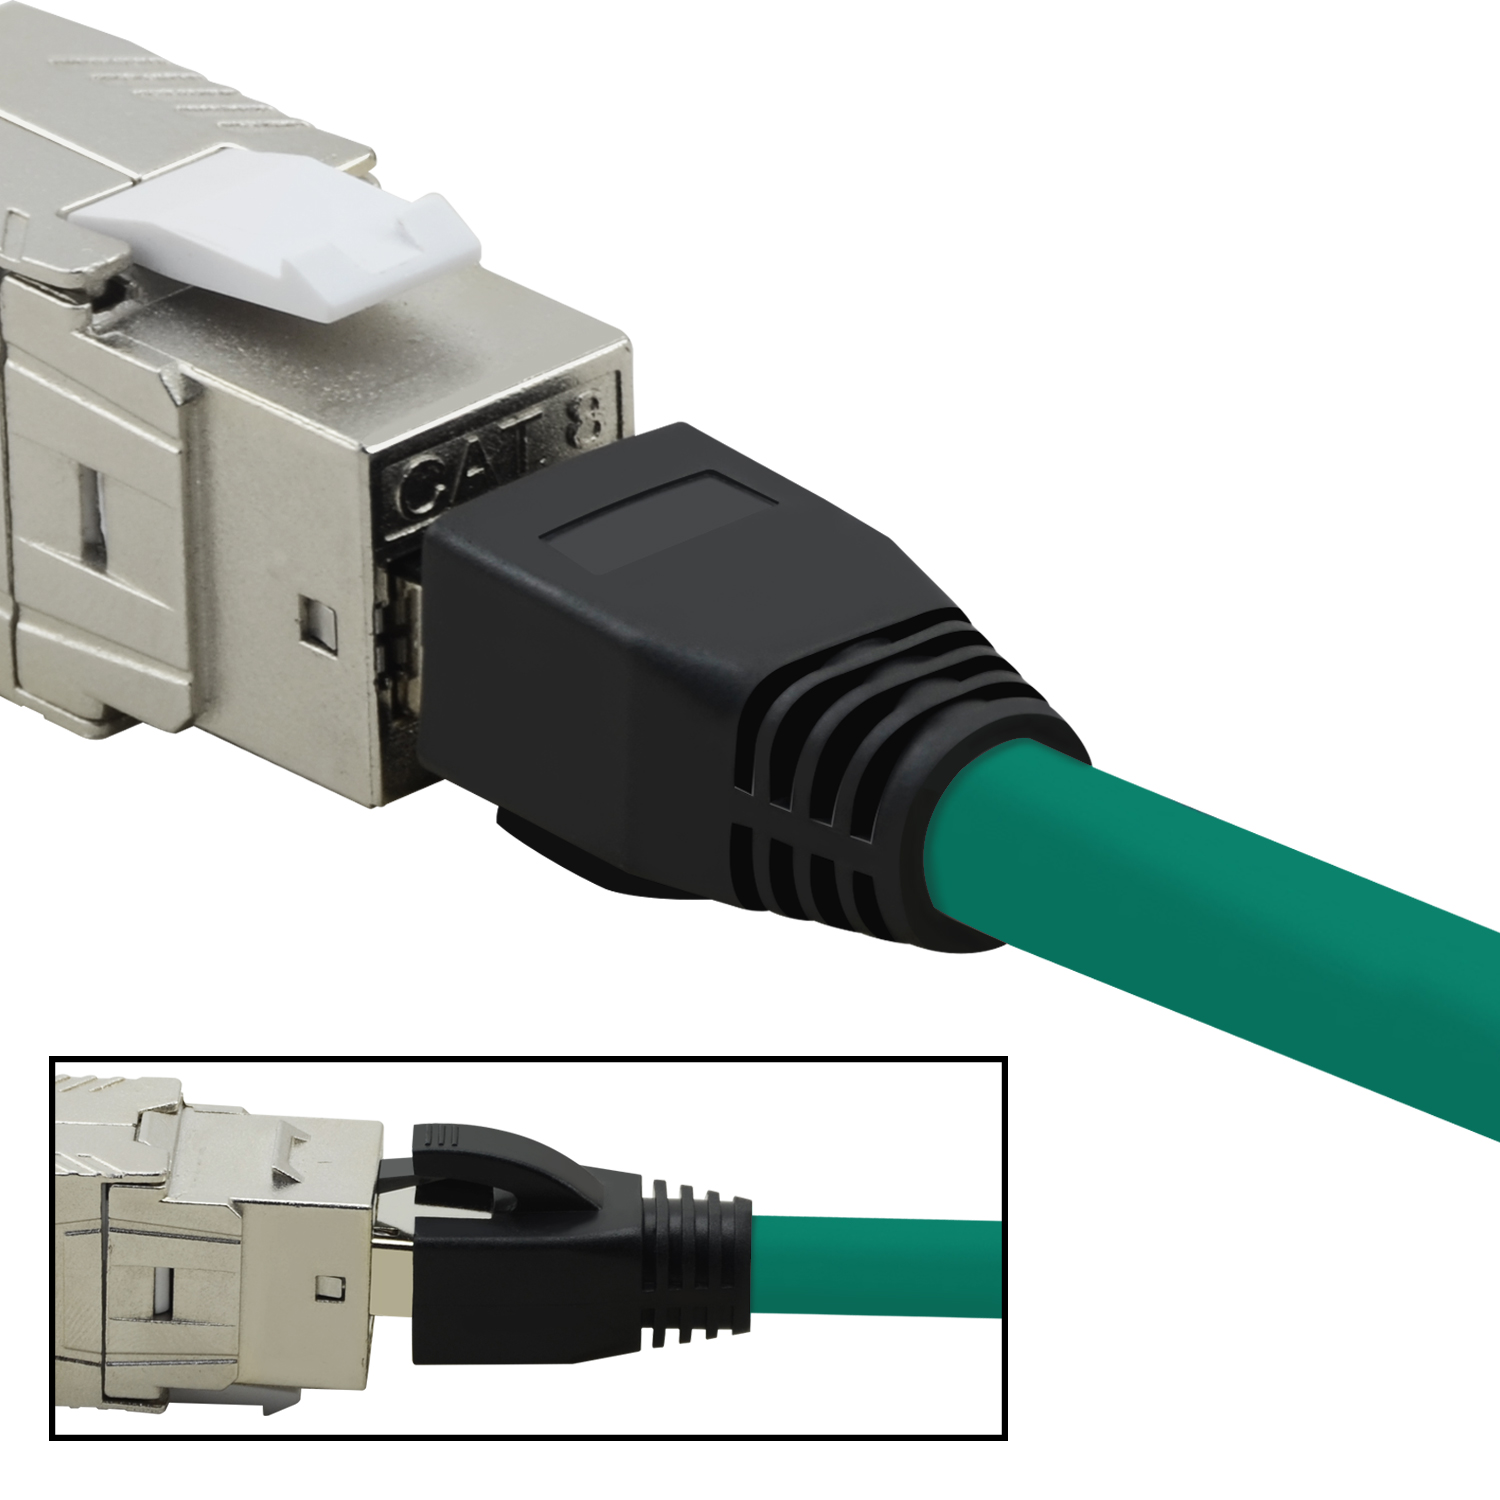 TPFNET 5m Patchkabel / Netzwerkkabel Netzwerkkabel, S/FTP GBit, m 5 grün, 40